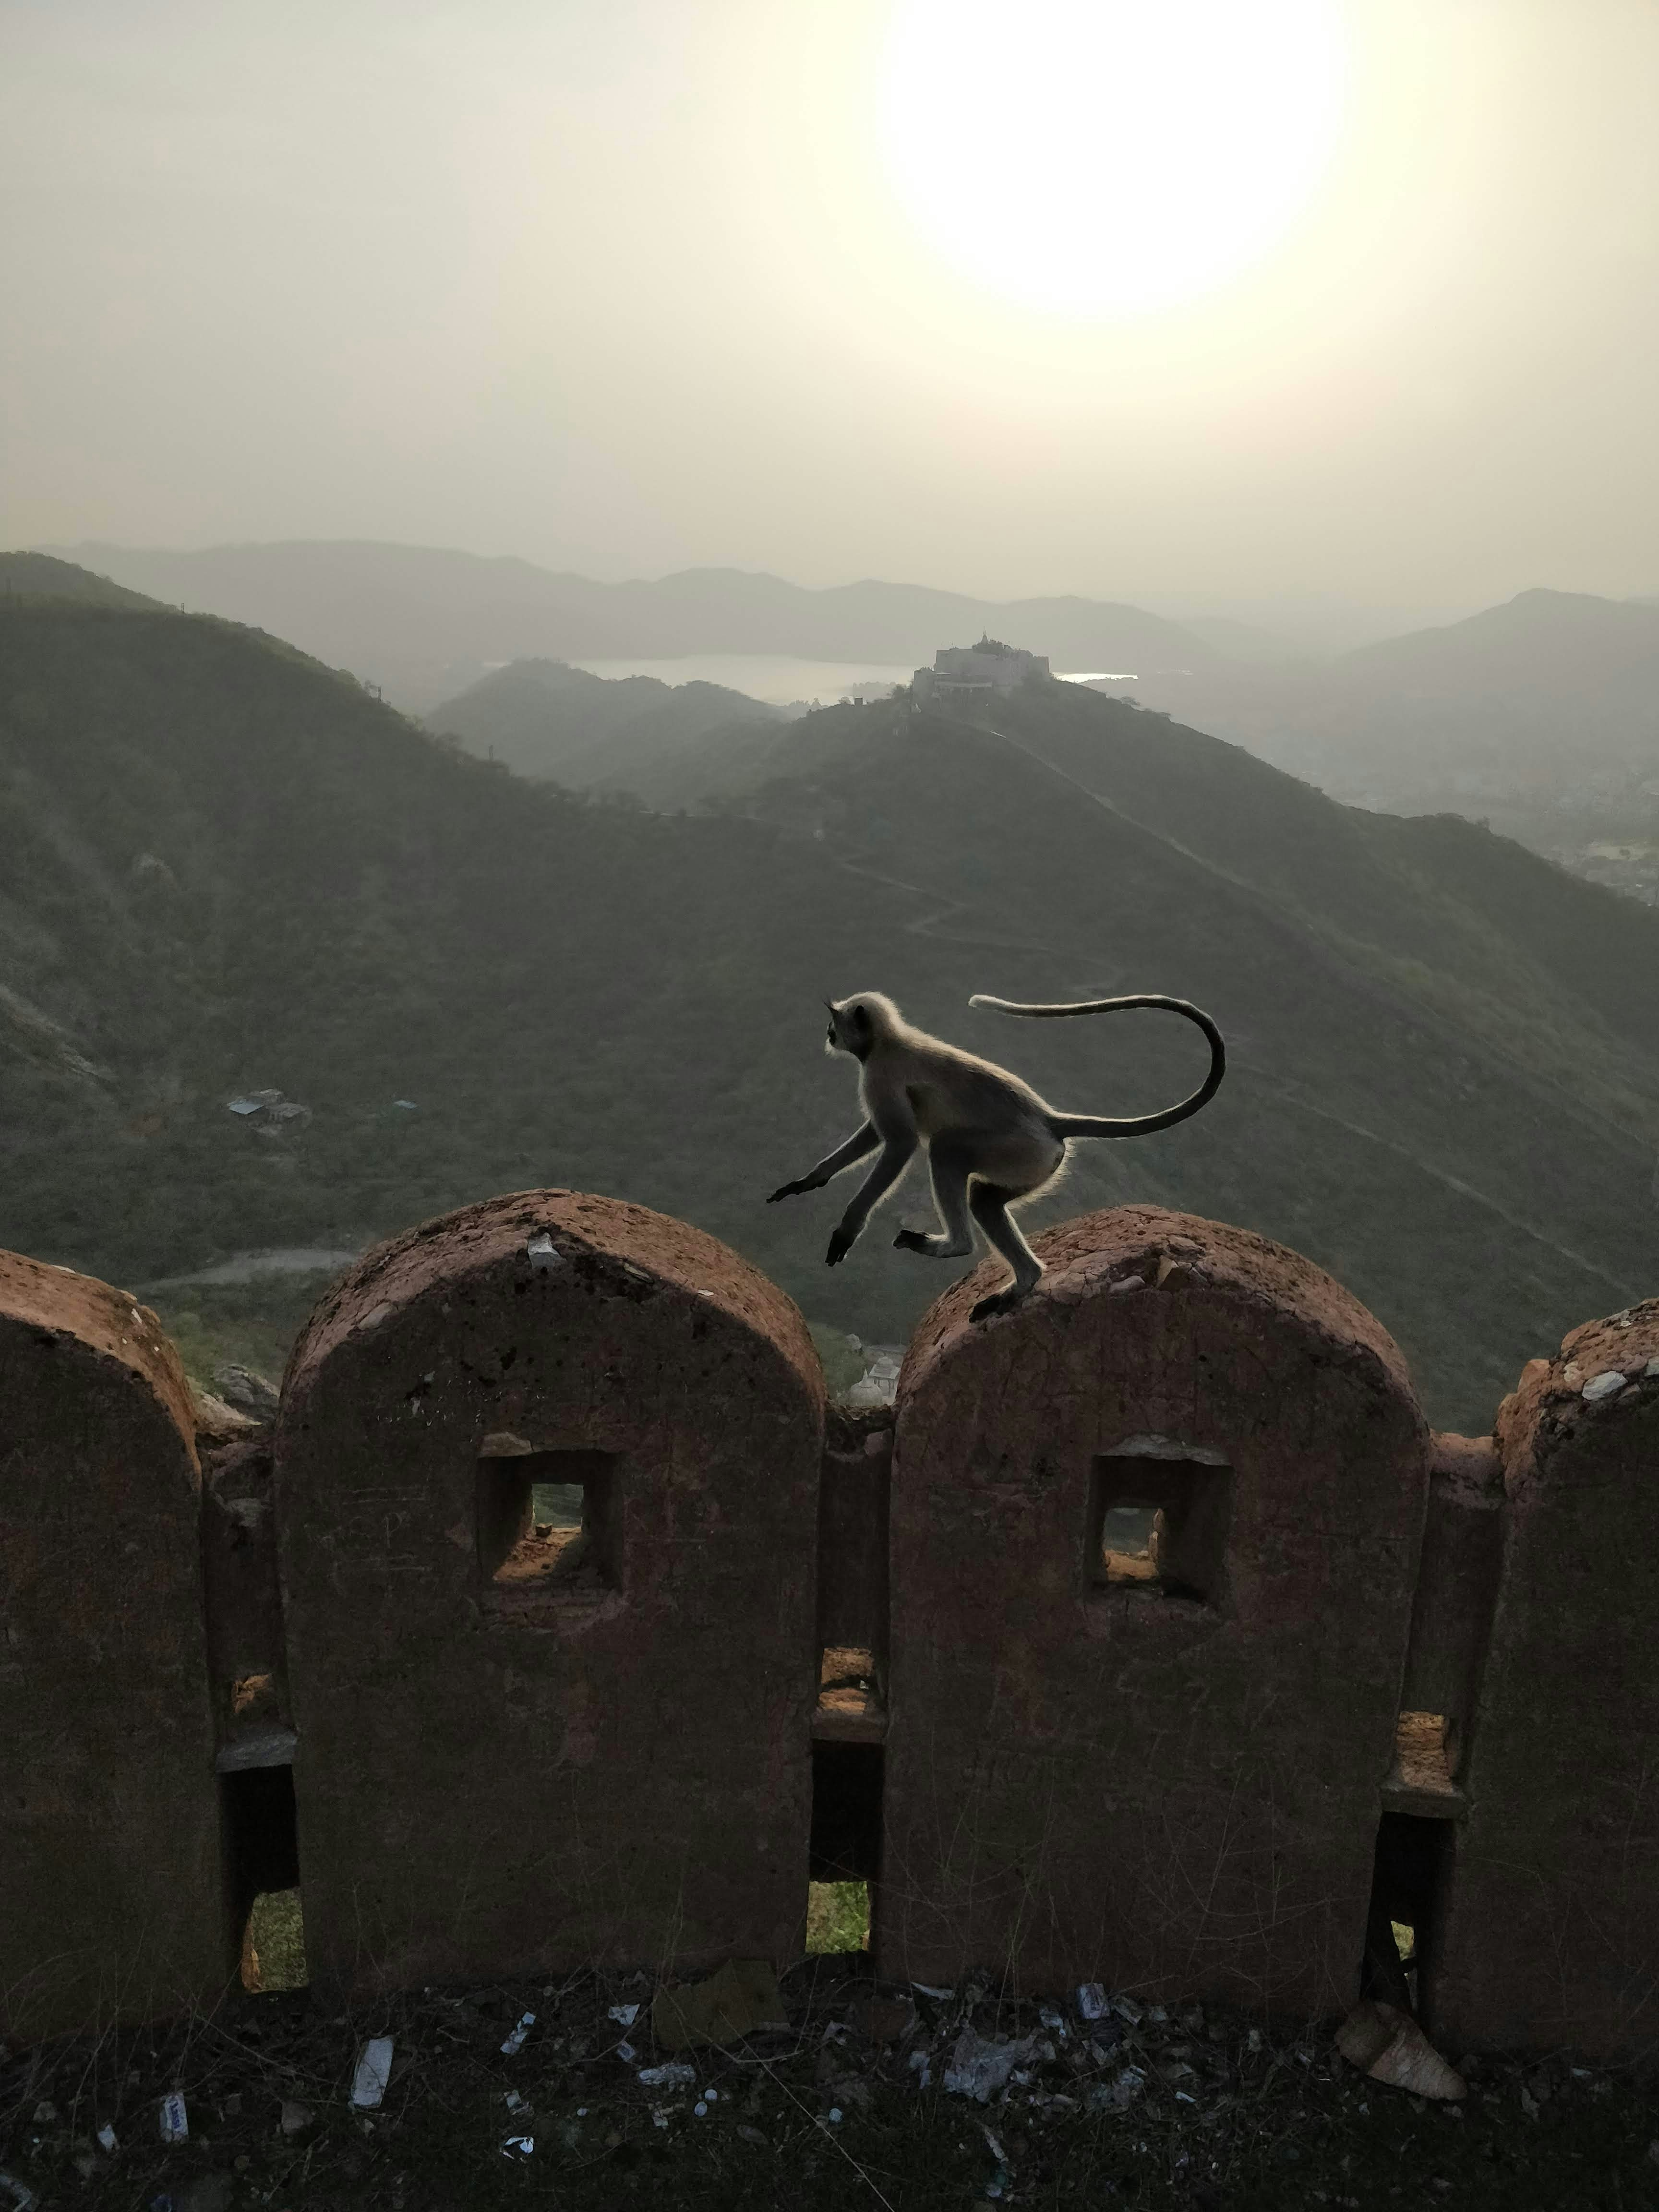 Monkey jump taken at Jaipur, India